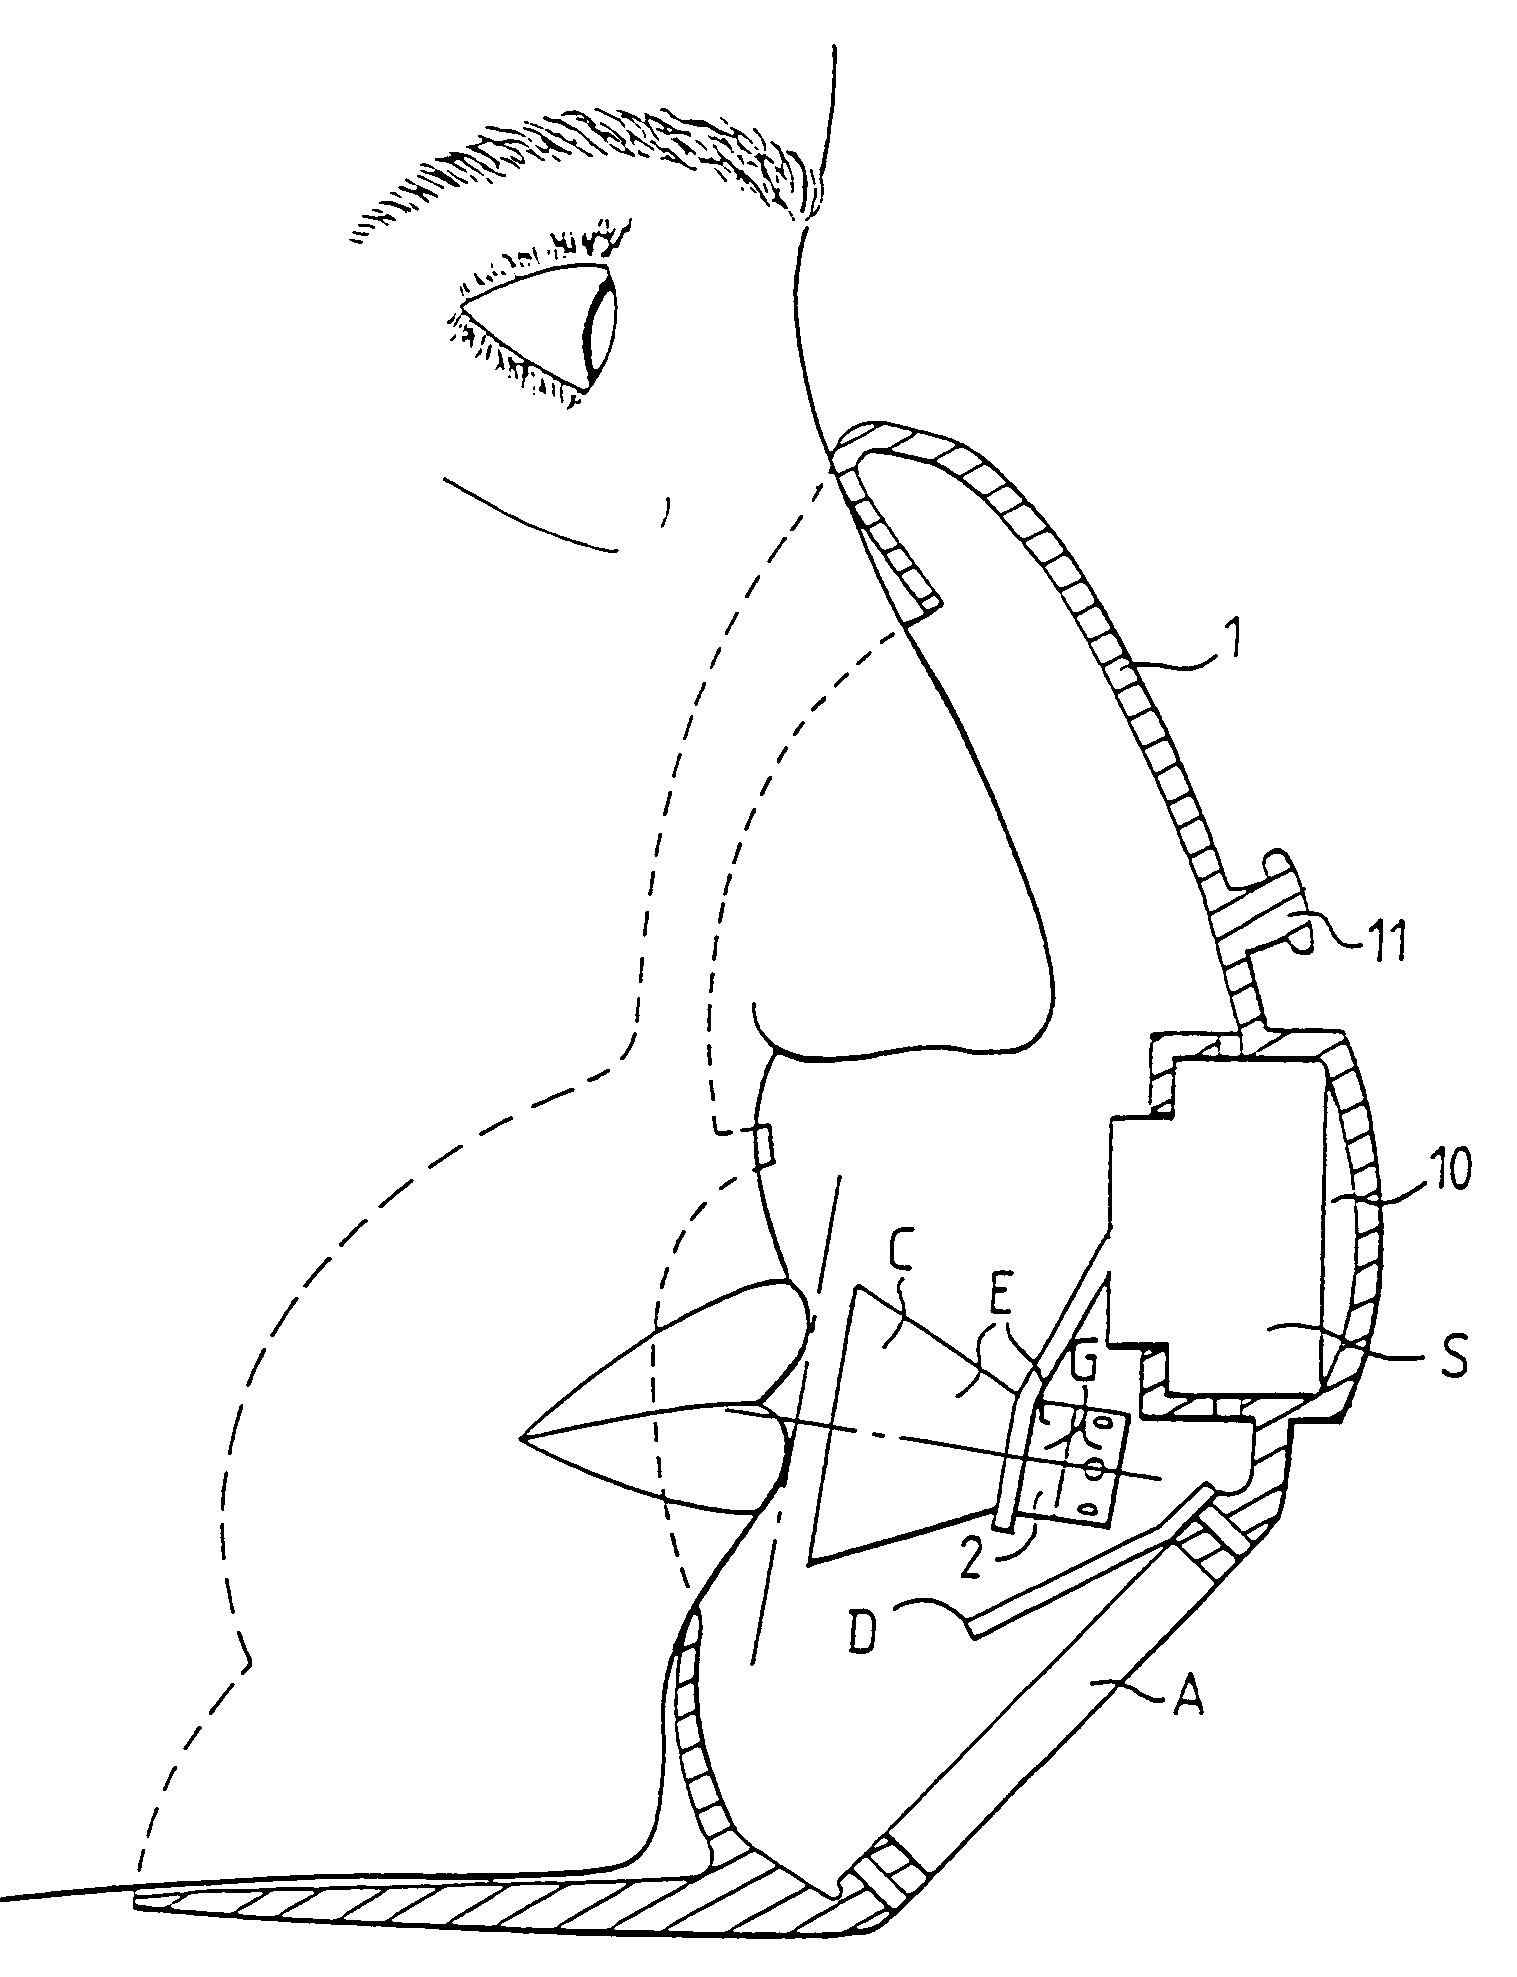 Oxygen inhaler mask with sound pickup device